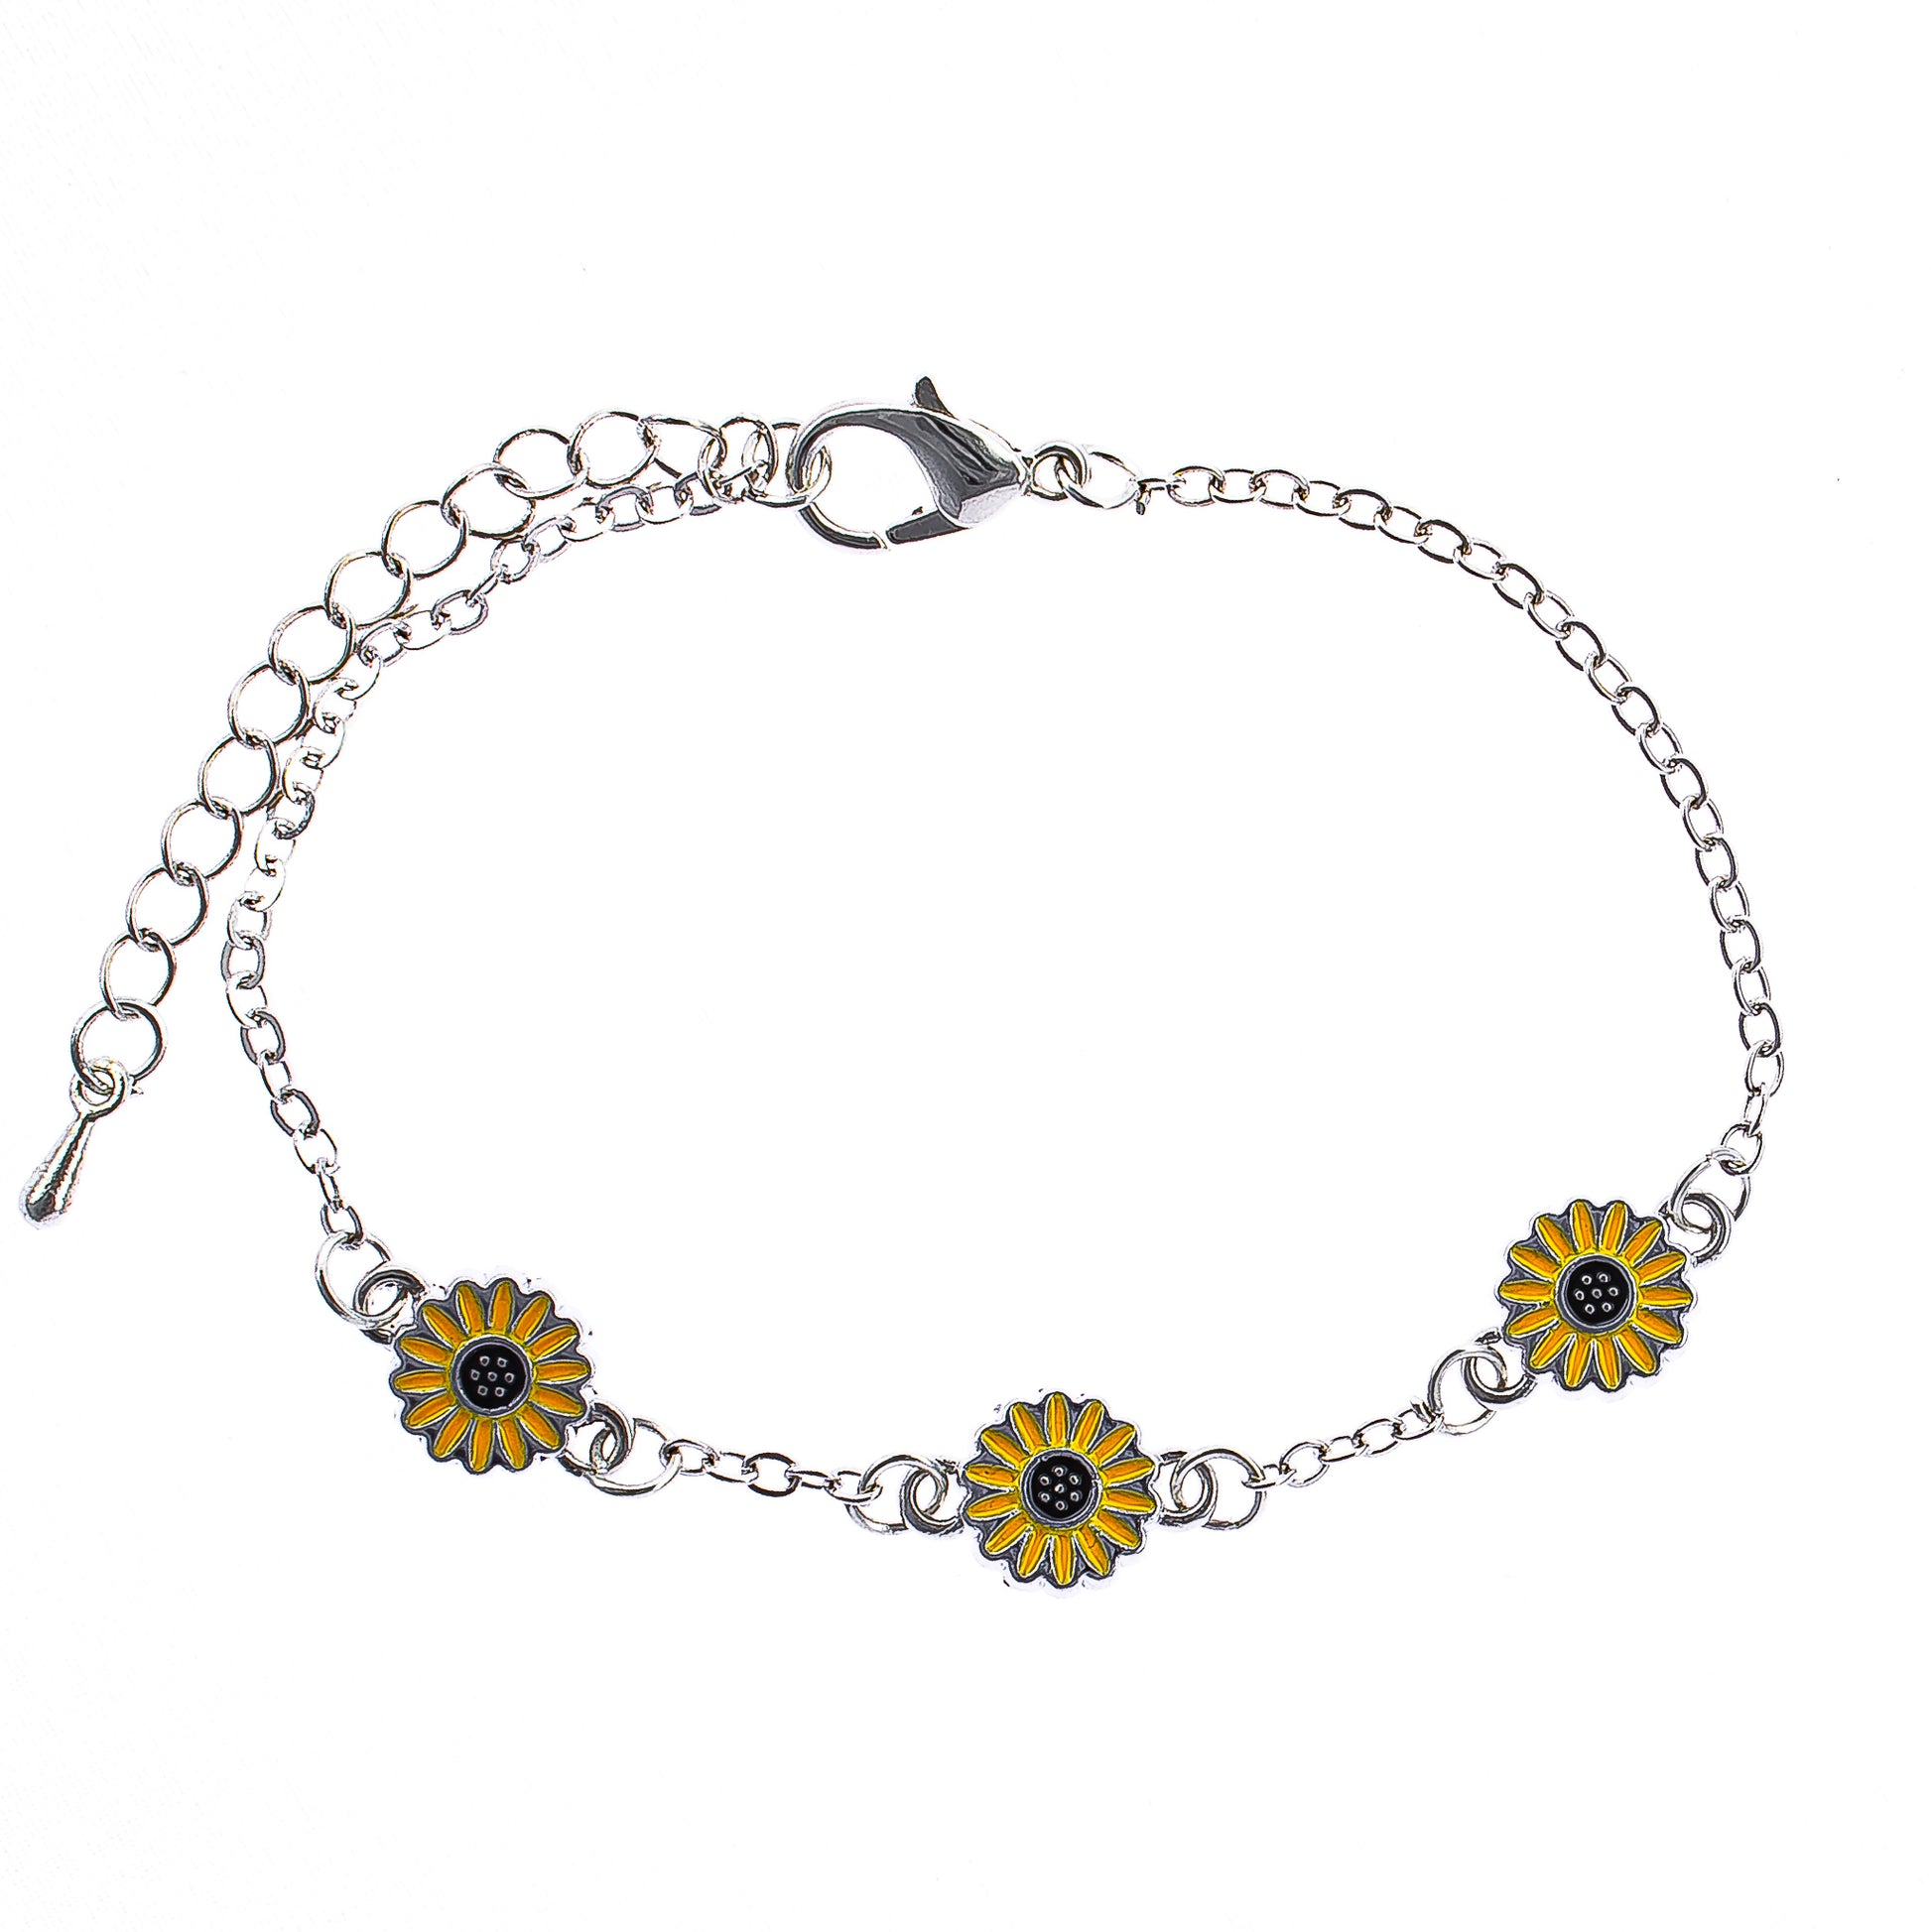 Daisy bracelet, chain link, women, teen, girls, boho style